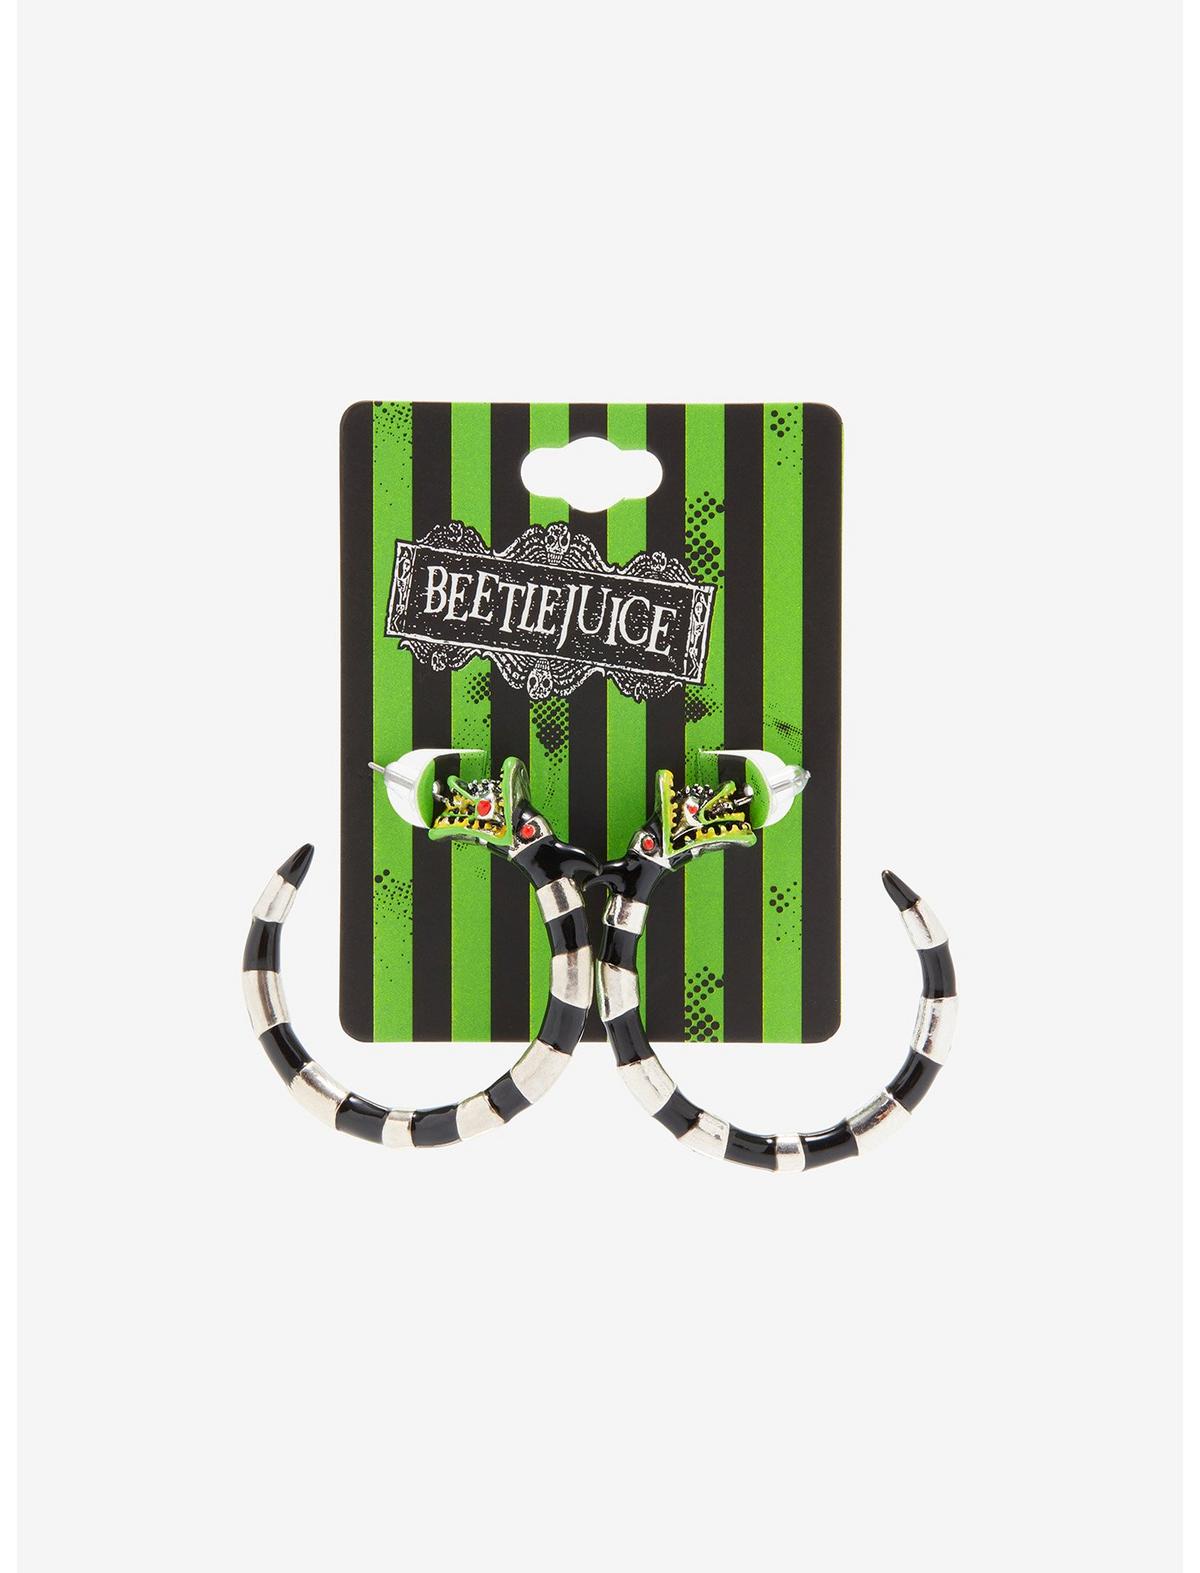 Beetlejuice Sandworm Hoop Earrings